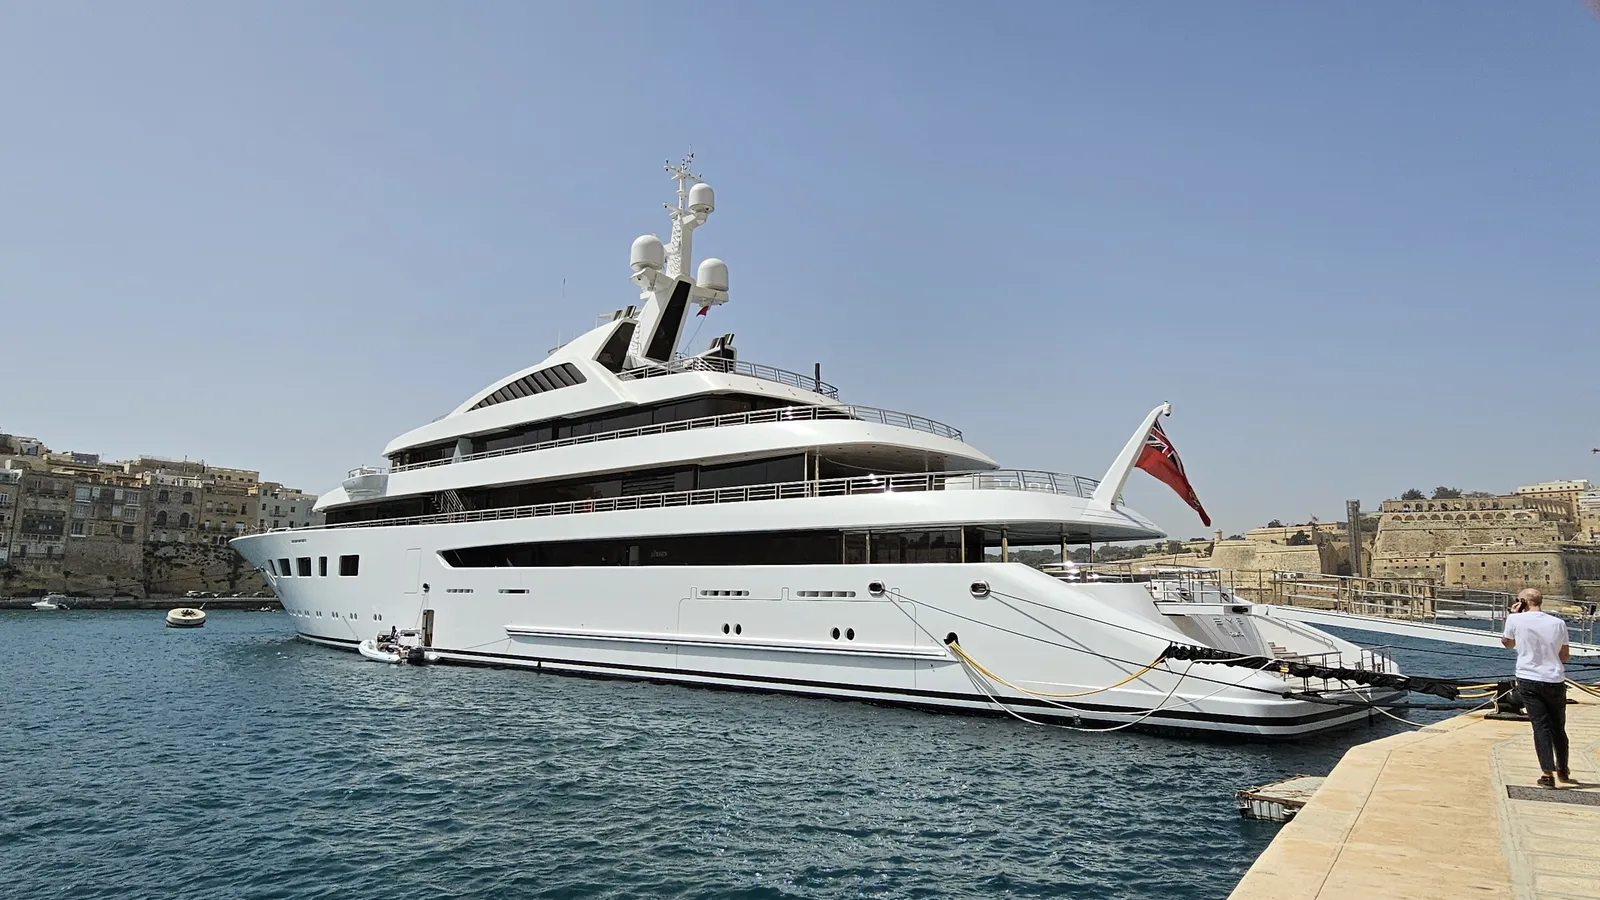 Luxury superyacht Eye built by Lurssen at Malta